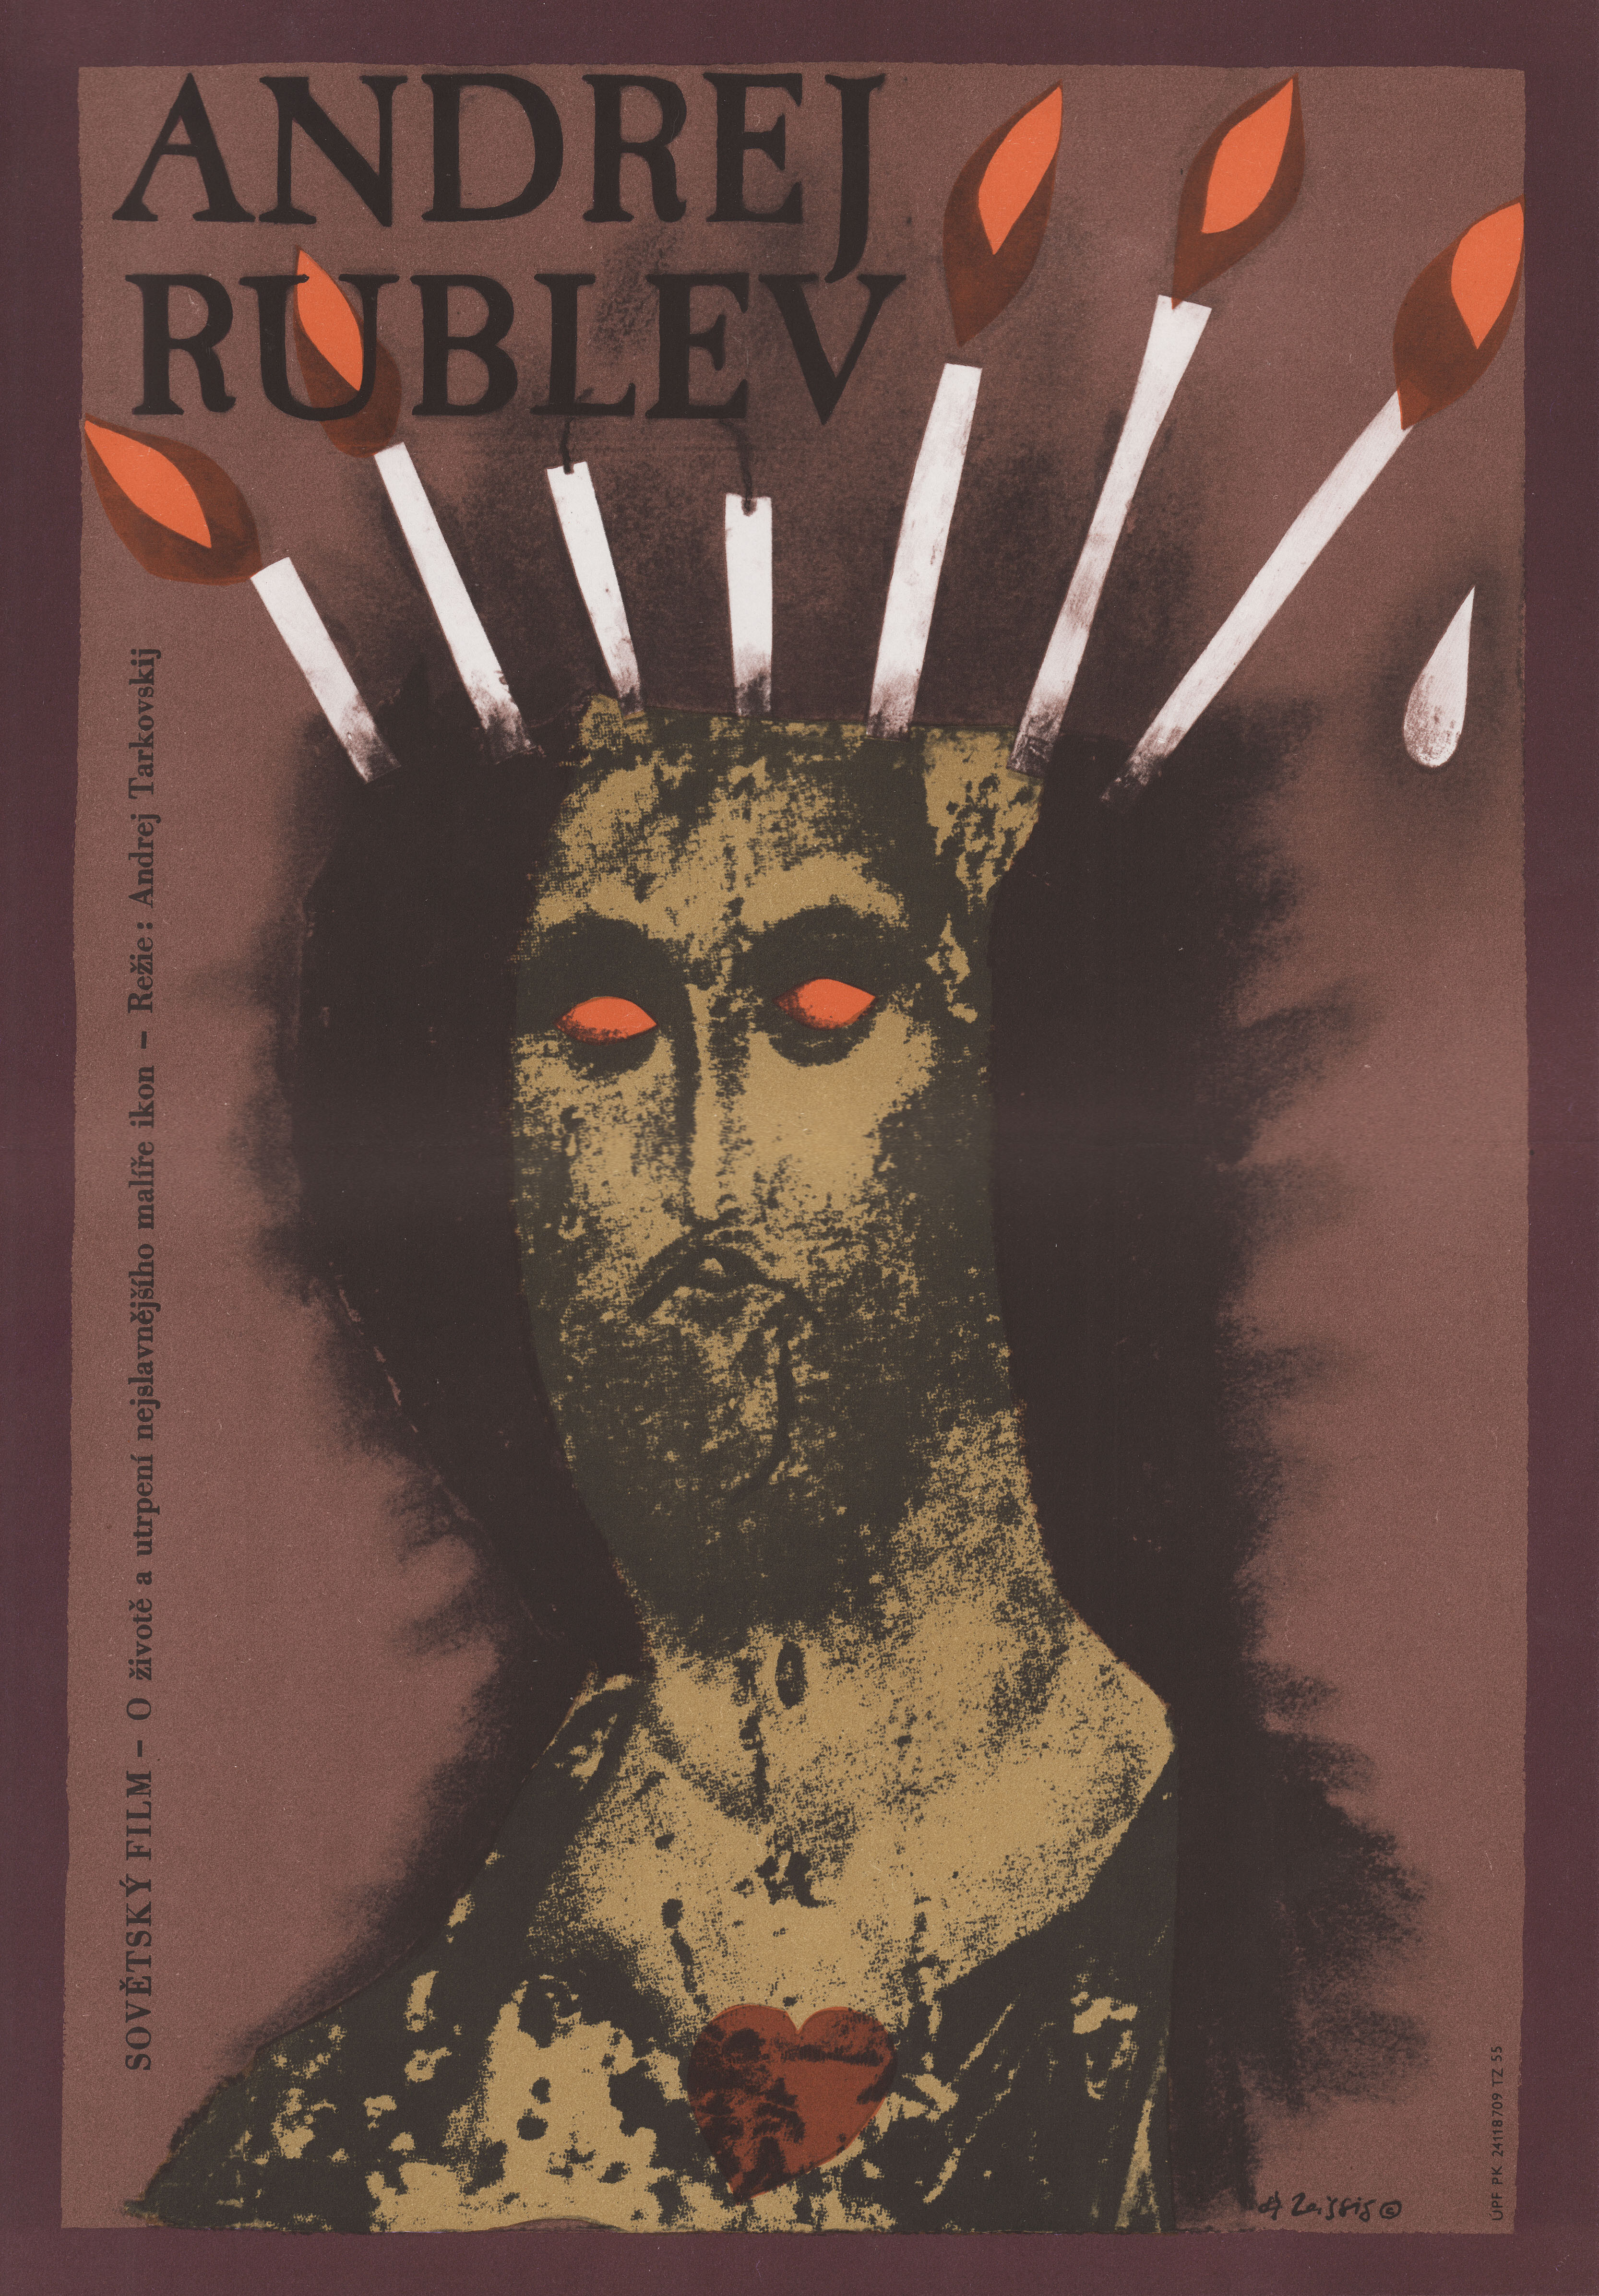 Андрей Рублёв (режиссёр Андрей Тарковский, 1966), чехословацкий постер к фильму, автор Карел Тейссиг, 1987 год